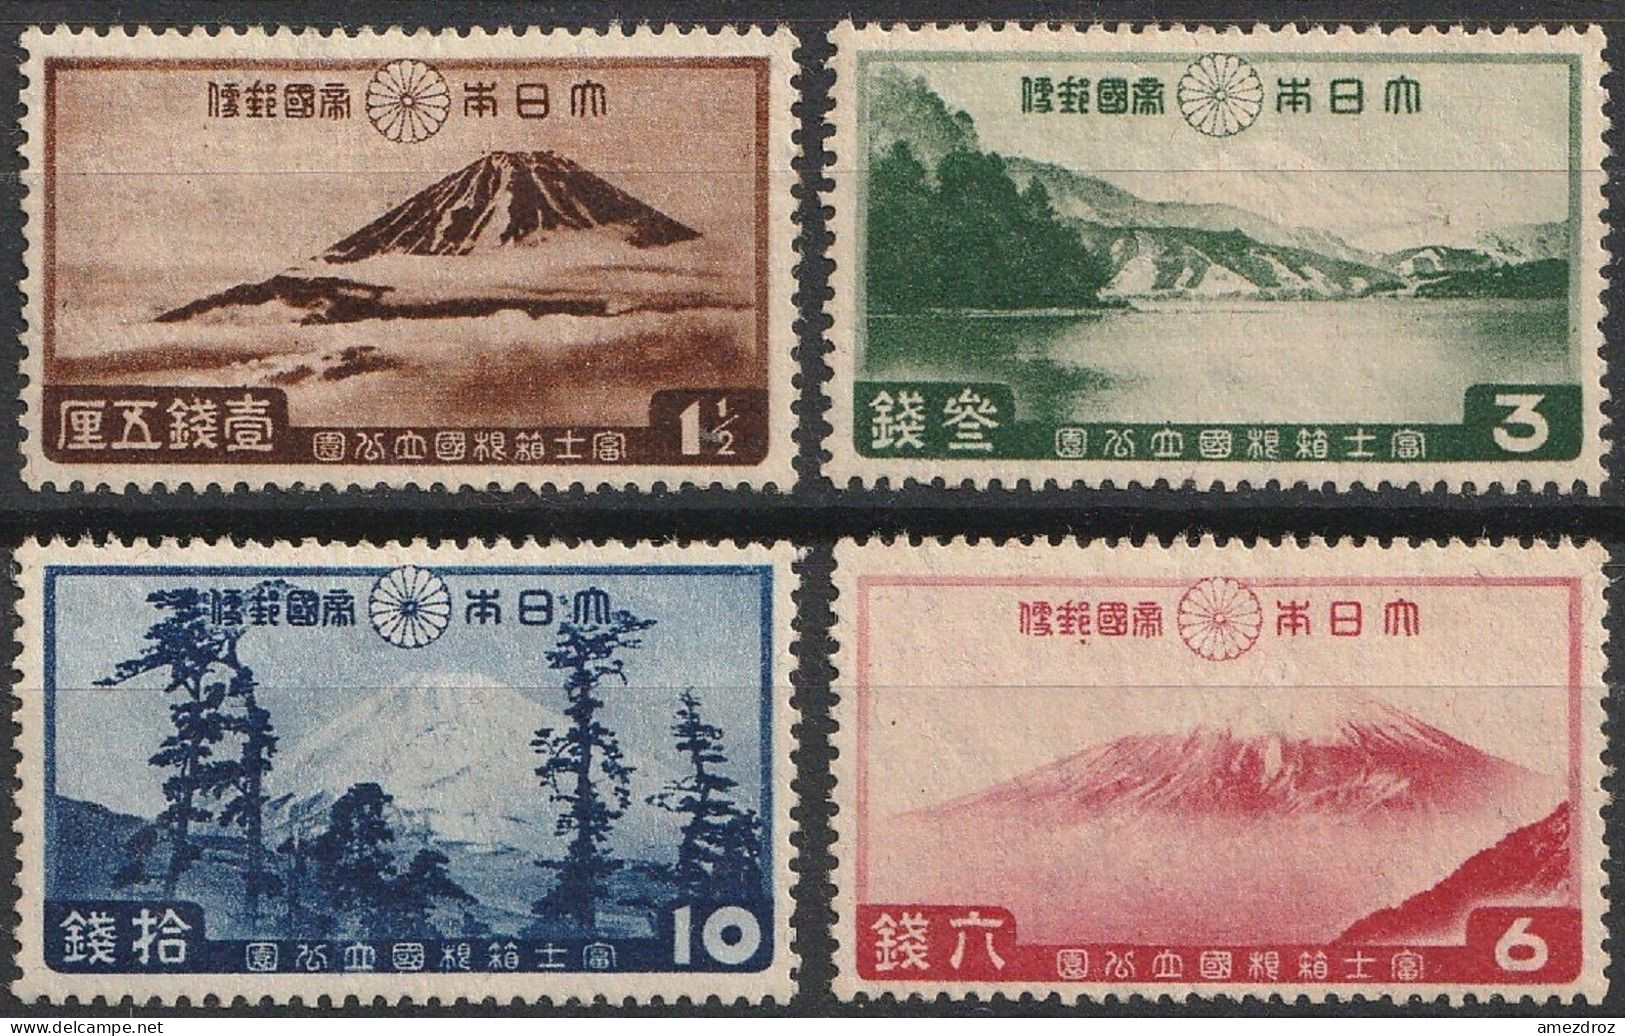 Japon 1936 N° 231-234 * Fuji-Hakone National Park (H17) - Ongebruikt